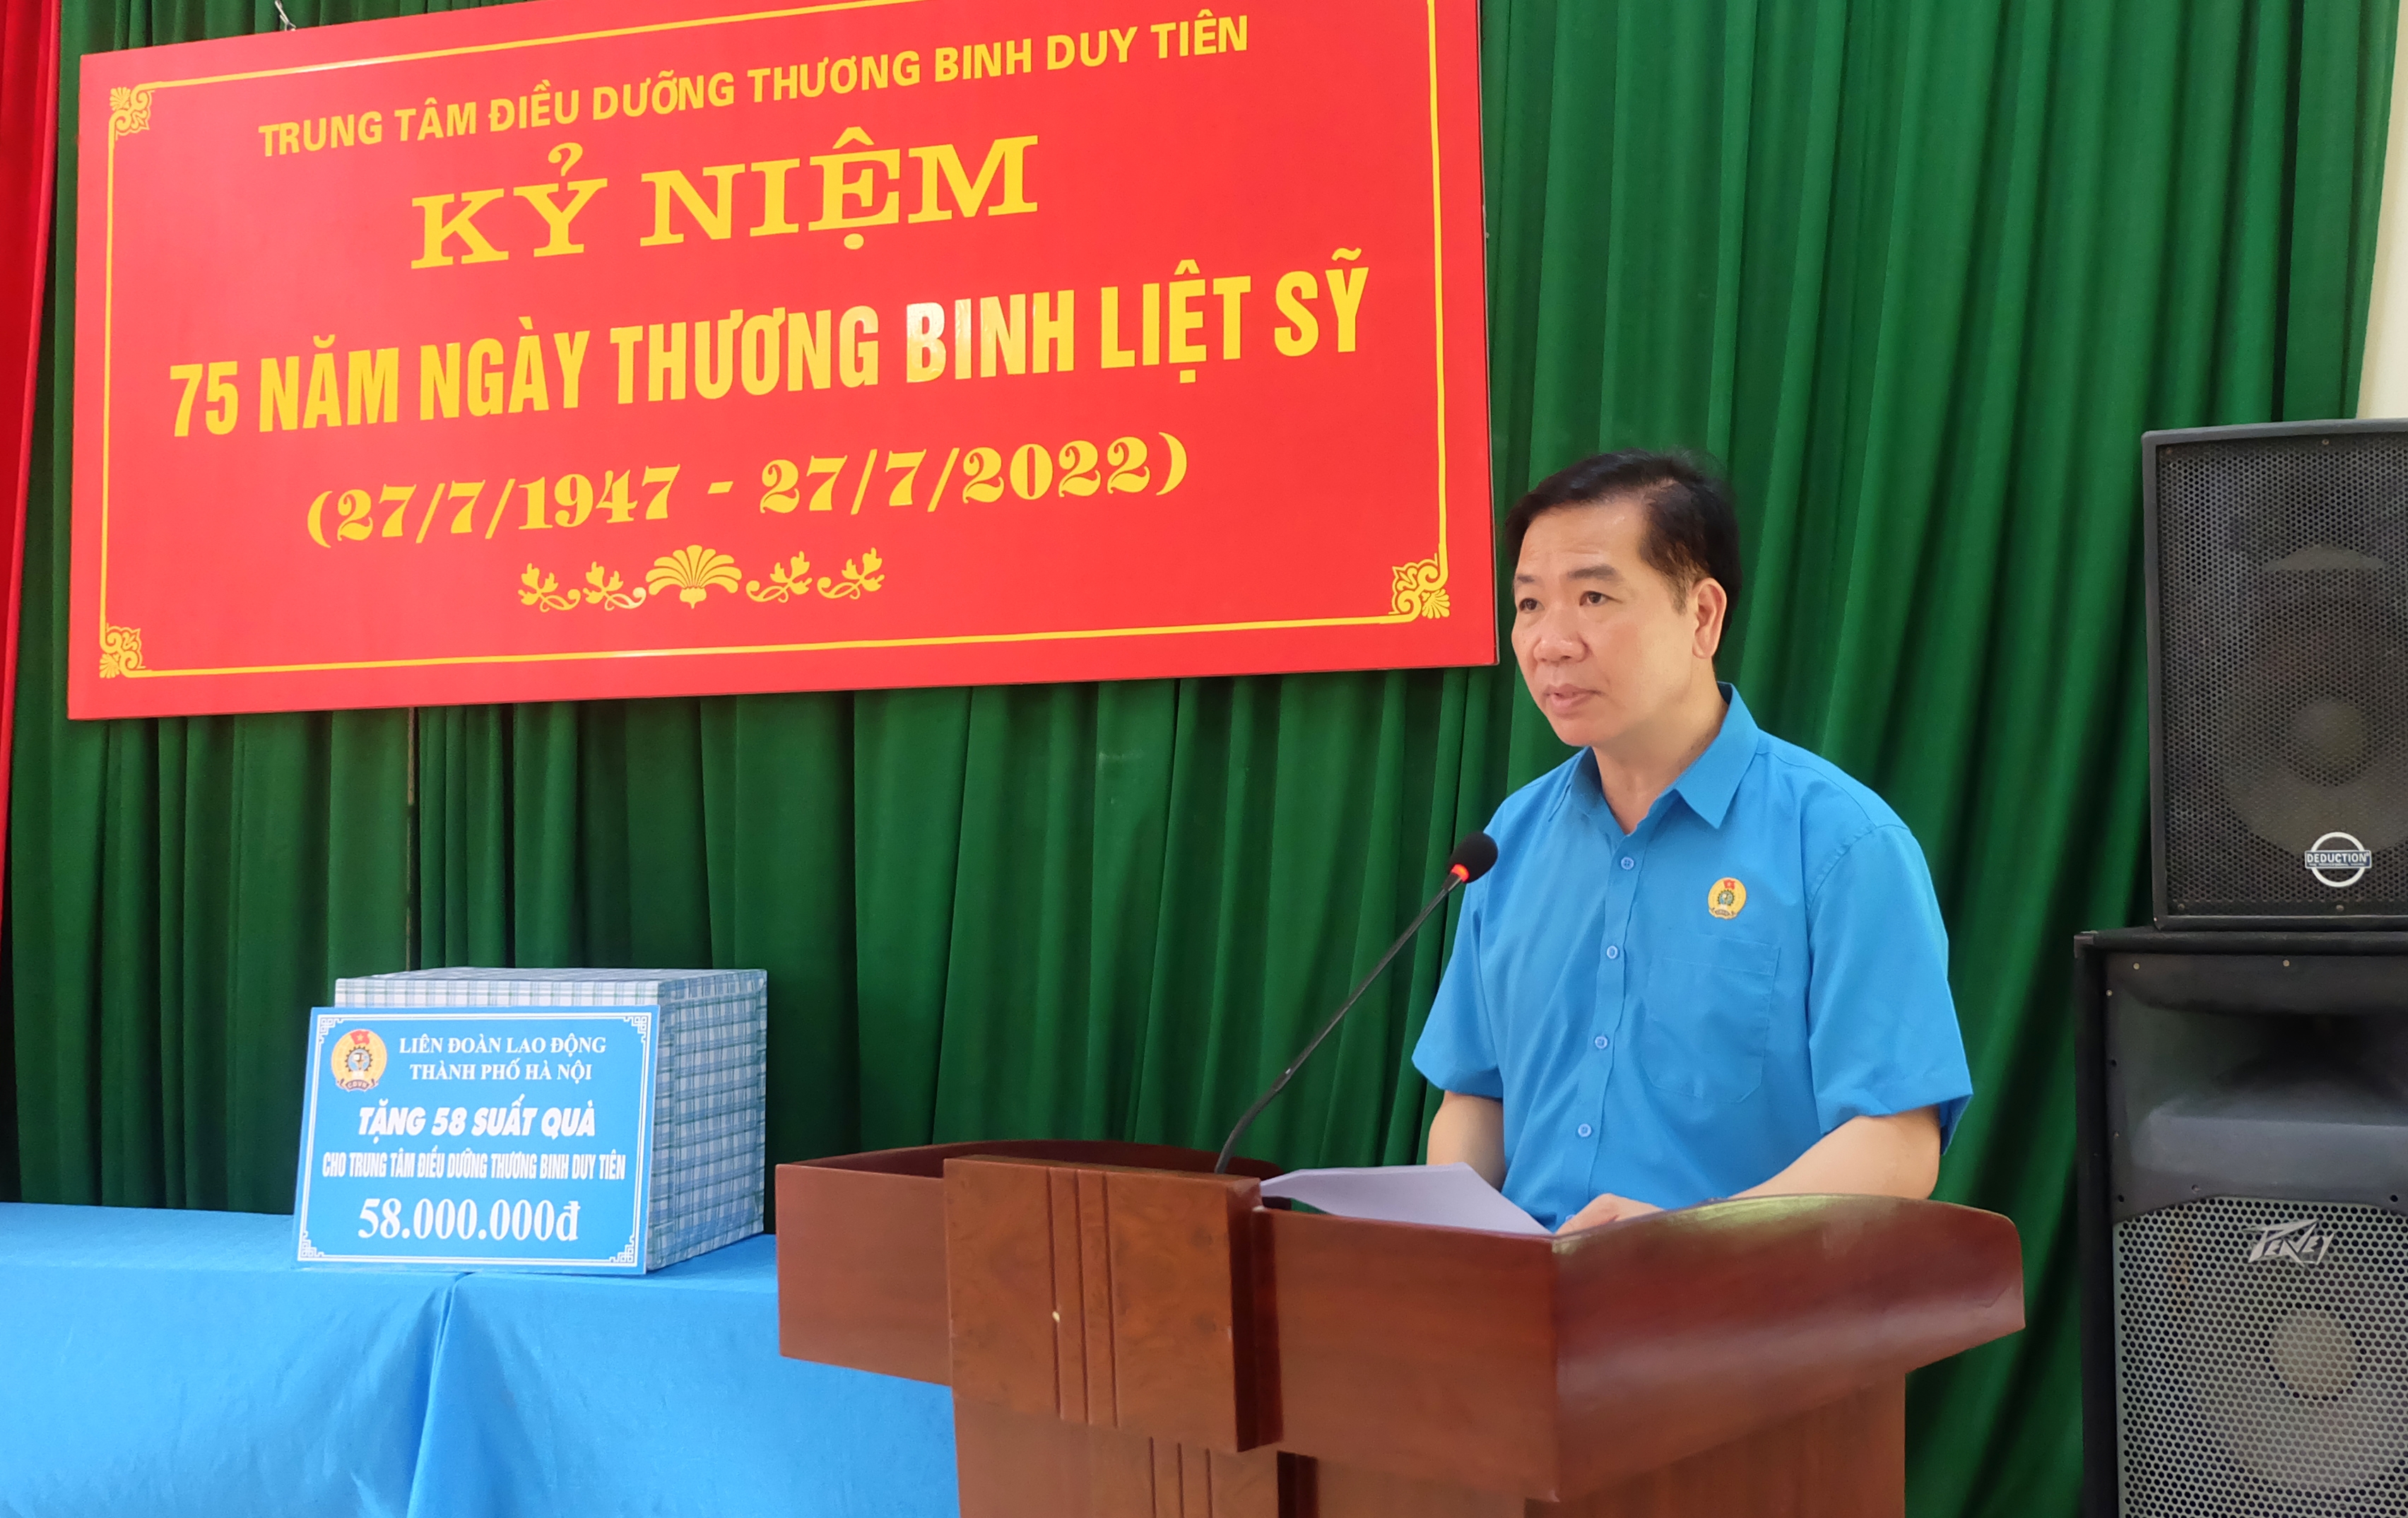 Lãnh đạo LĐLĐ thành phố Hà Nội thăm, tặng quà tại Trung tâm điều dưỡng Thương binh Duy Tiên